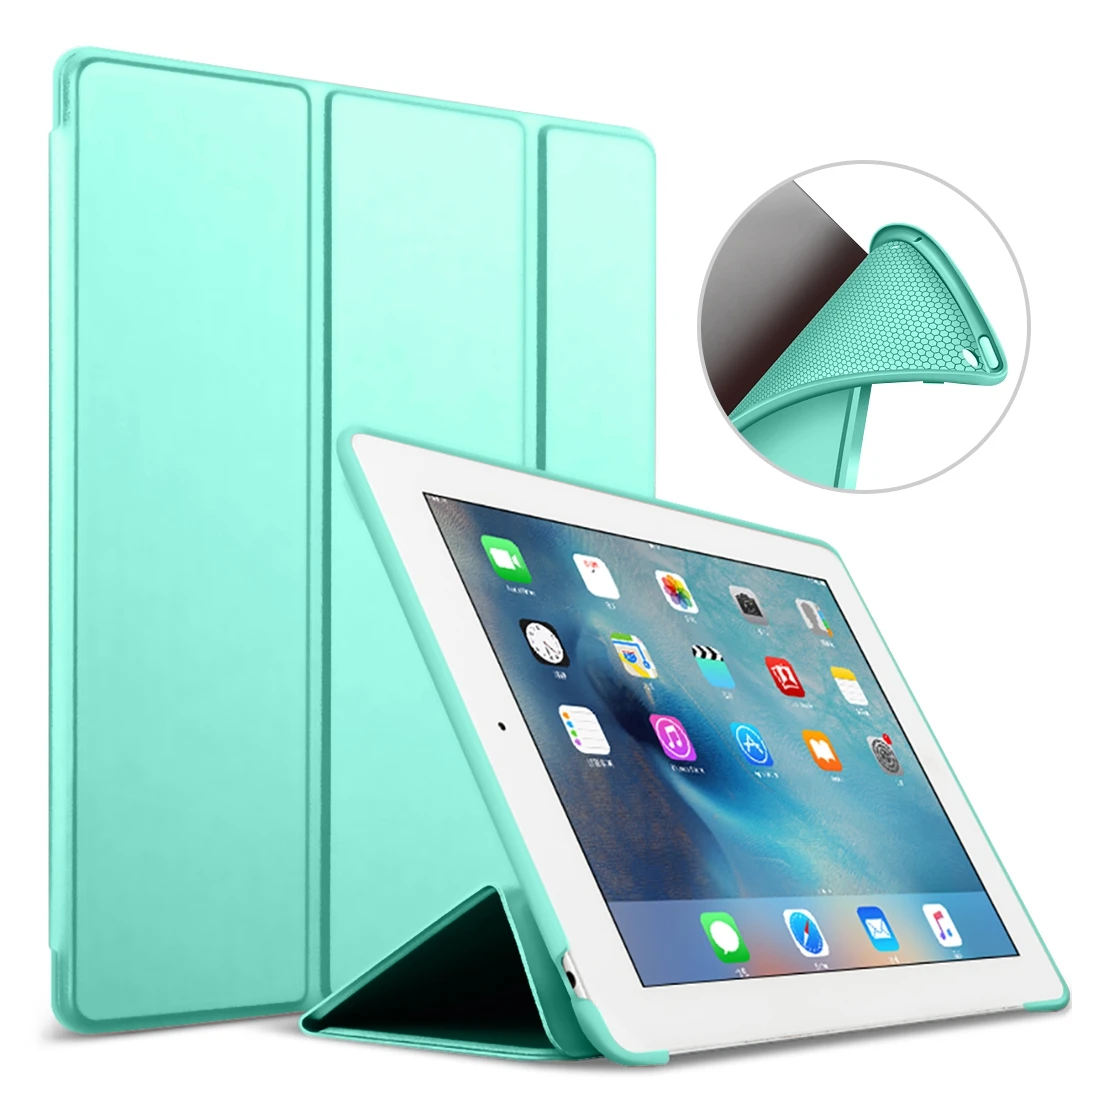 Для iPad Pro 10,5 чехол для iPad Air 3 Чехол чехол Funda из искусственной кожи Силиконовый мягкий чехол для iPad Air чехол Pro 10,5 - Цвет: mint